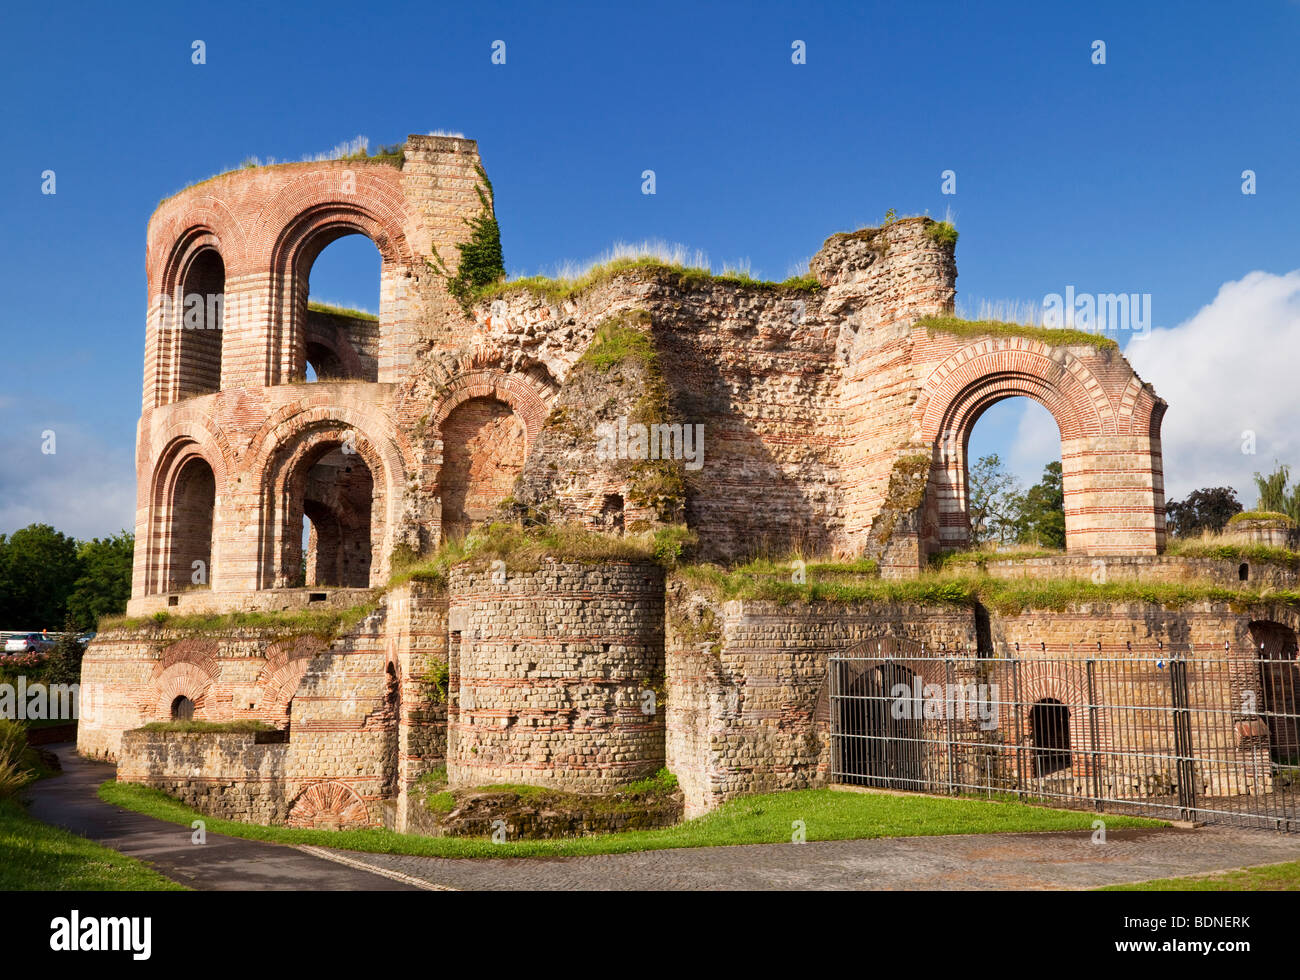 Ruines des bains romains à Trèves, Allemagne Europe Banque D'Images